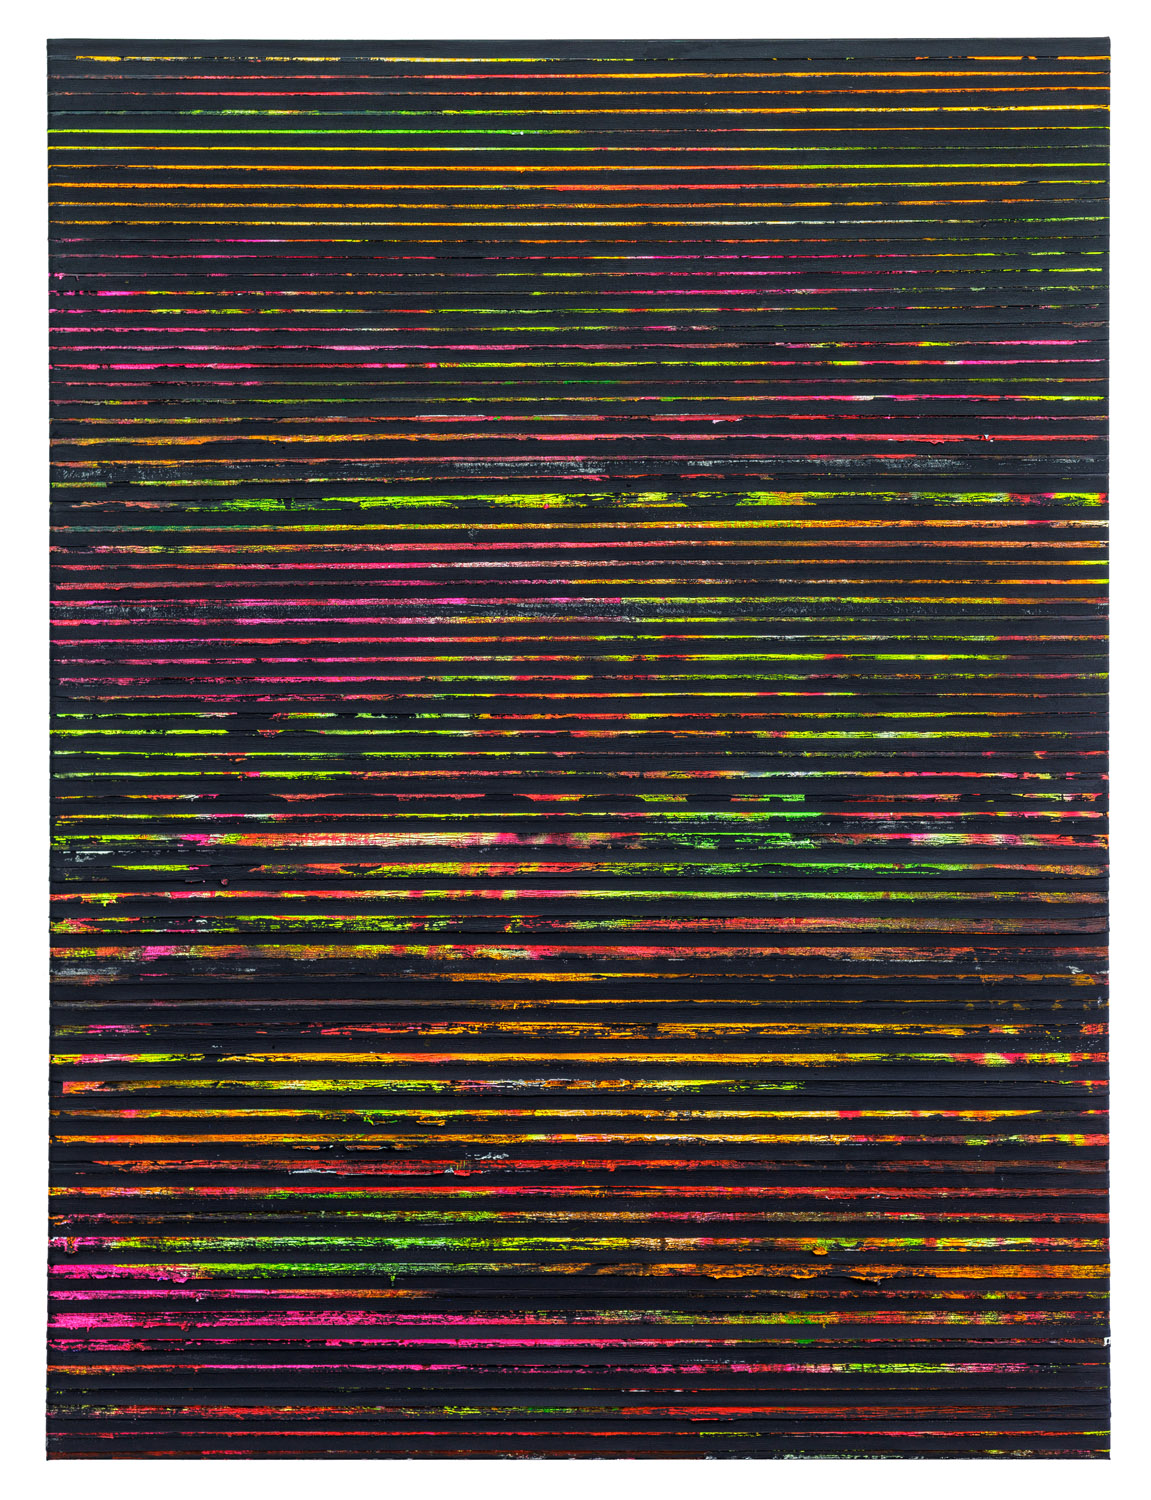 Paolo Bini, Sentiero di Eden, 2018, acrilico su nastro carta su tela, 200 x 150 cm, courtesy l'artista, Galleria Nicola Pedana, Caserta e Galleria Alberto Peola, Torino